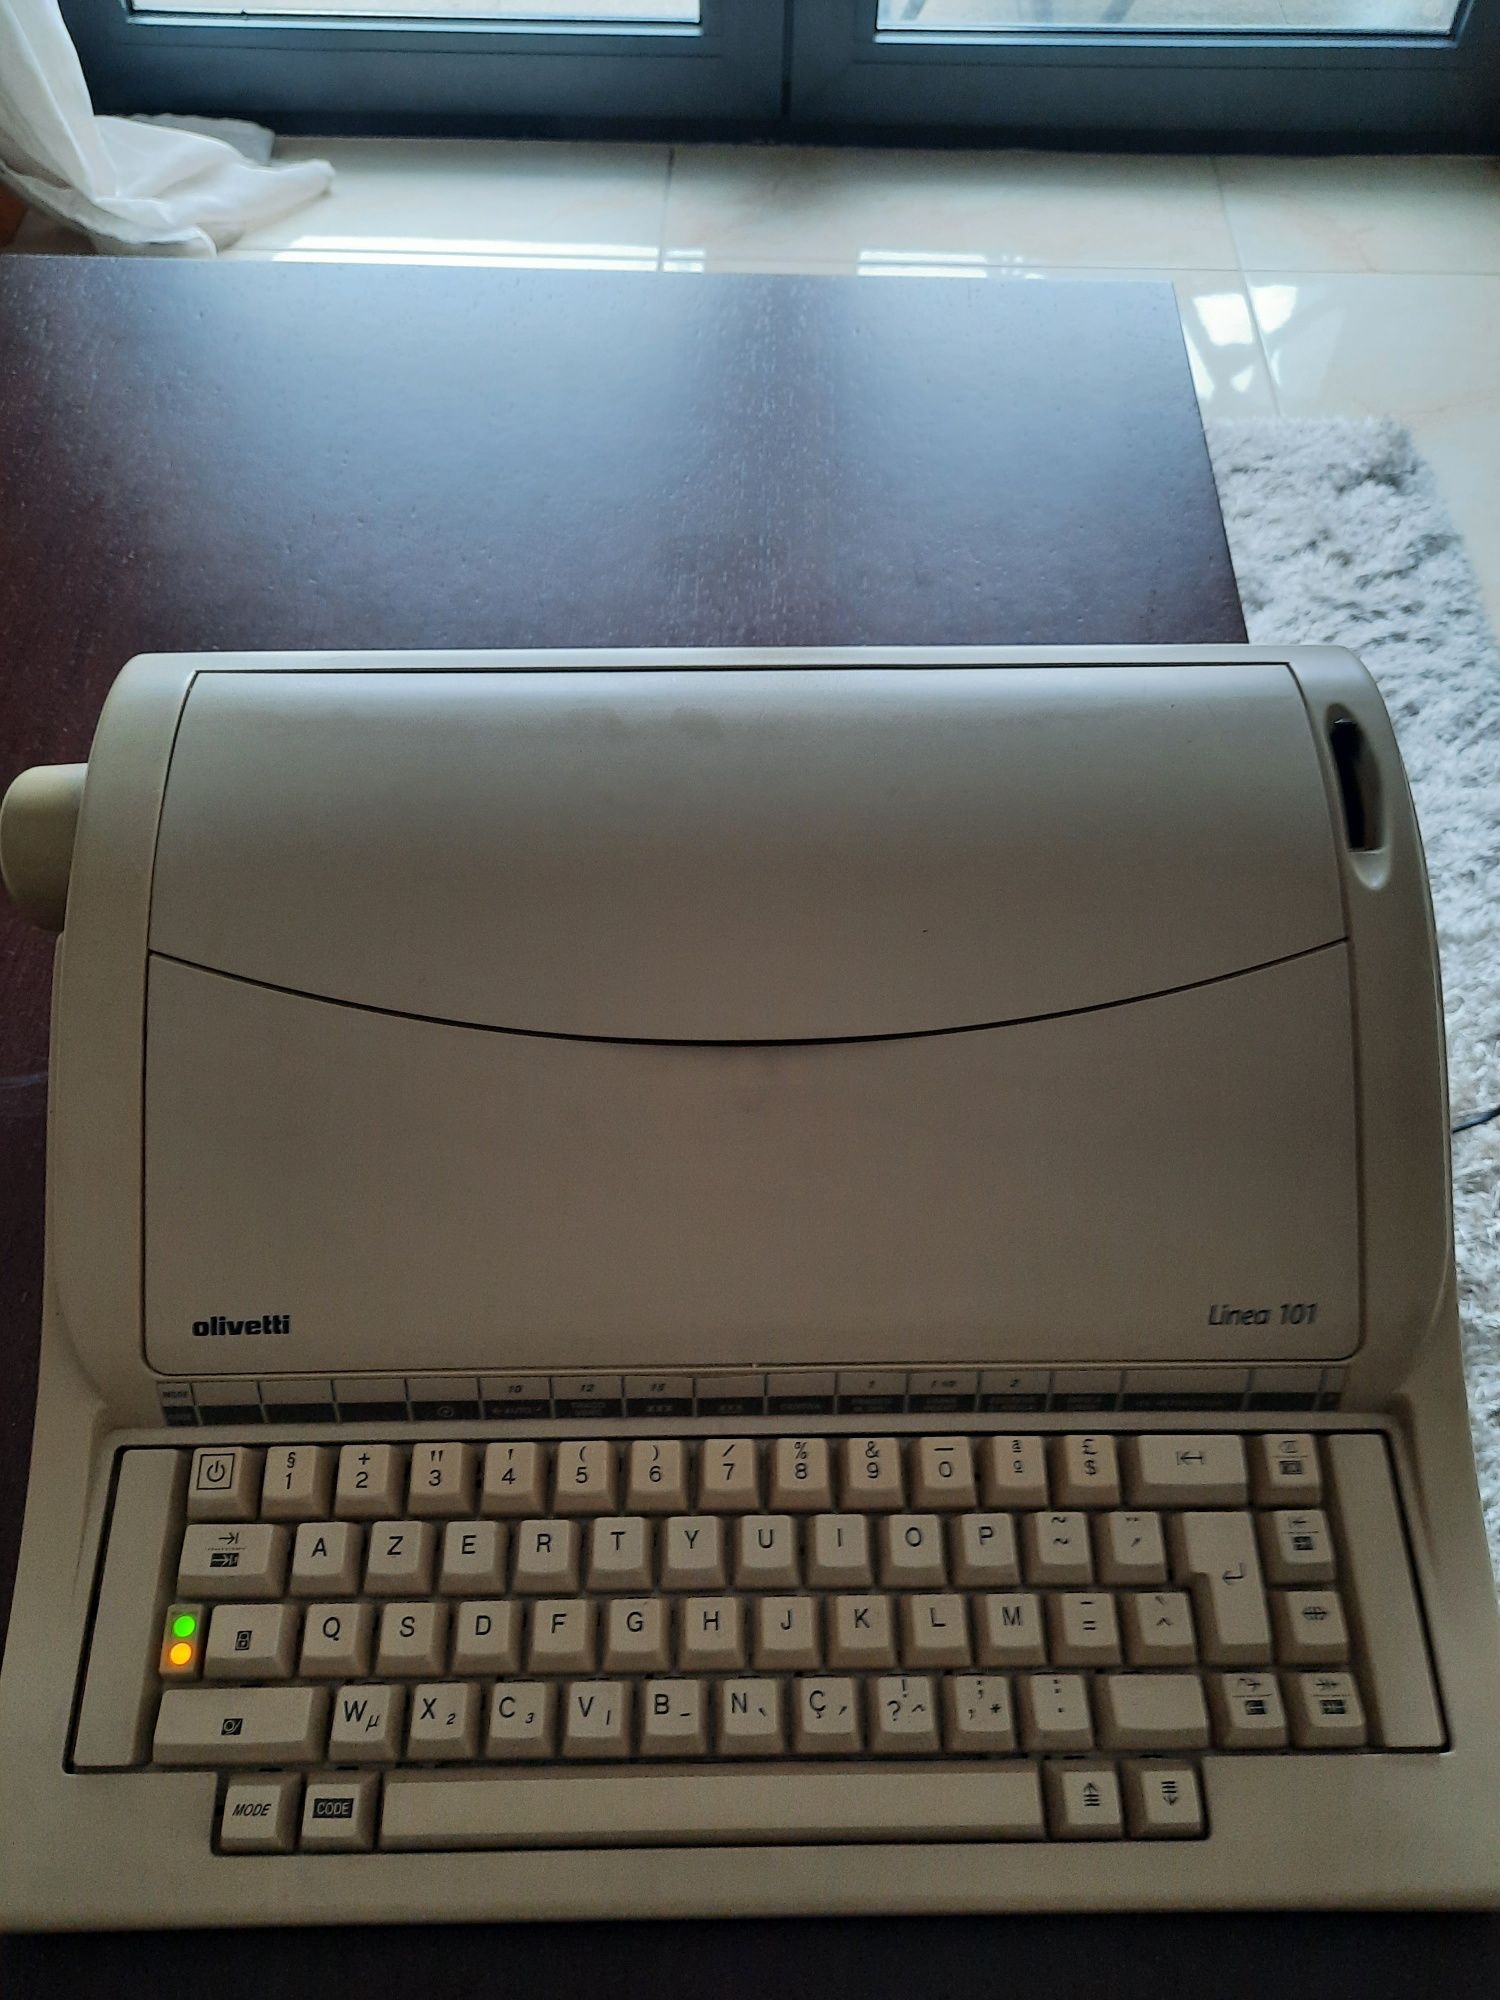 Maquina de escrever eletrónico